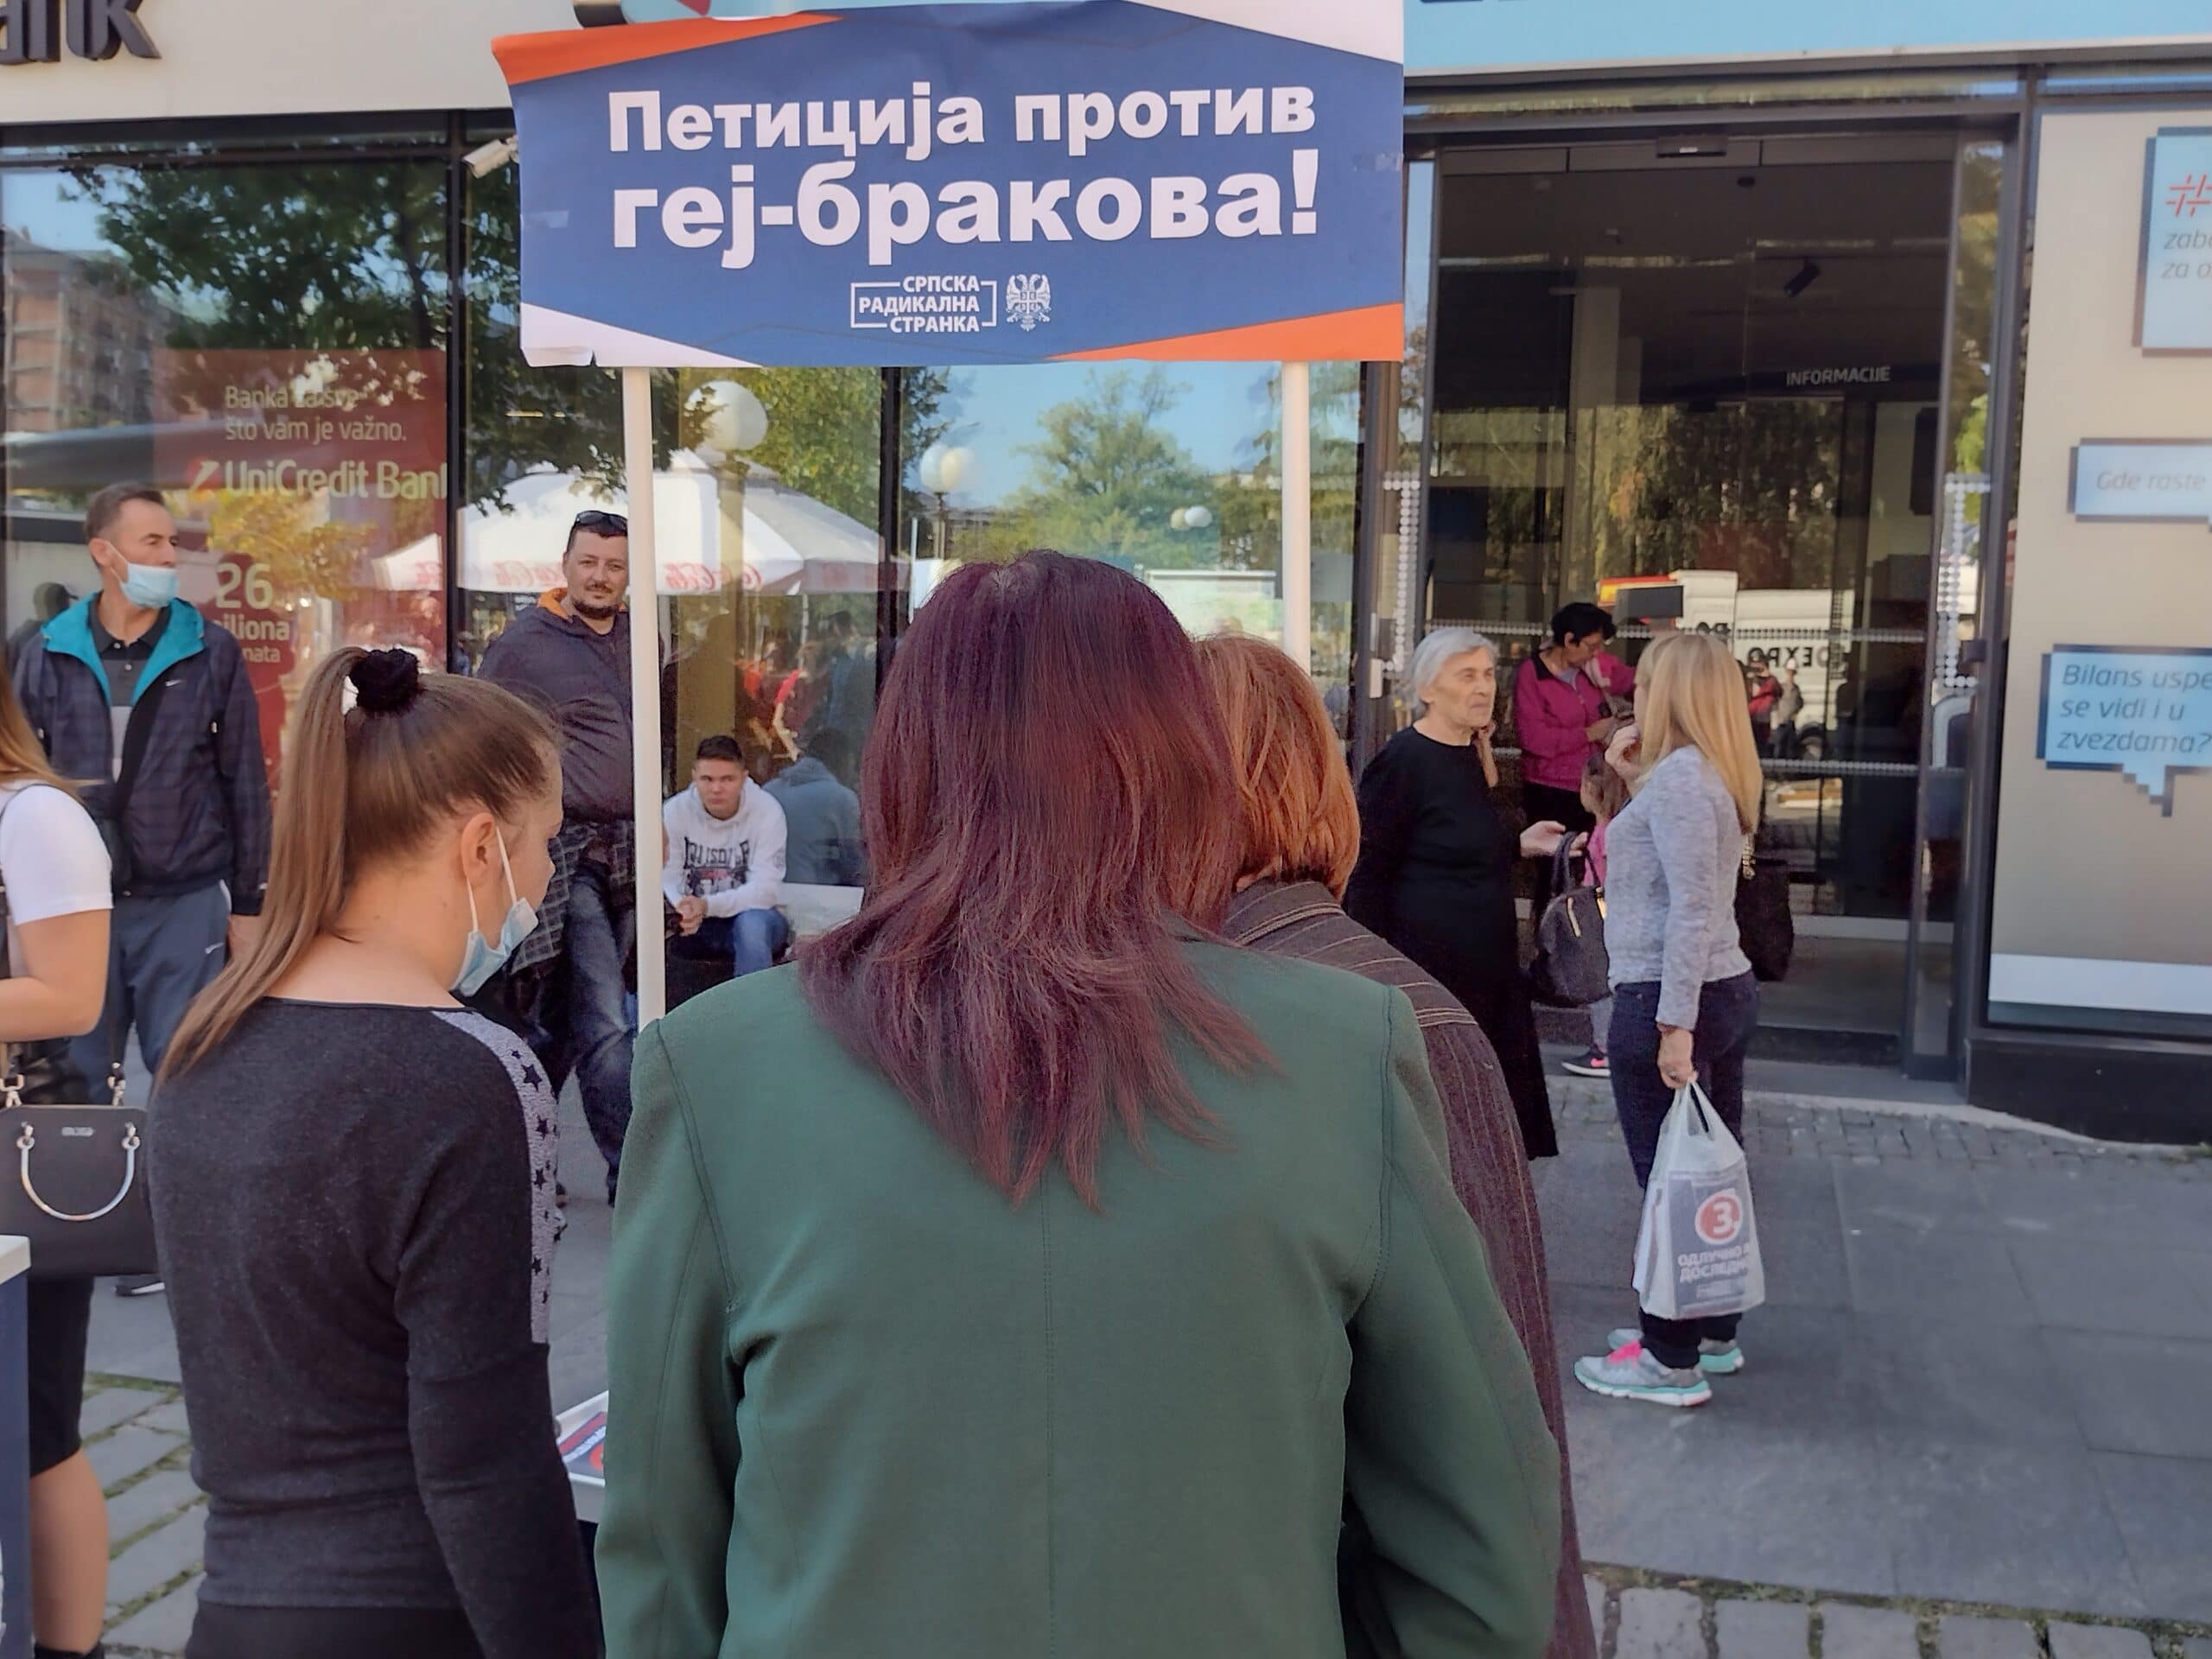 Šešelj delio knjige u Kragujevcu, organizovana peticija SRS-a protiv gej-brakova 2